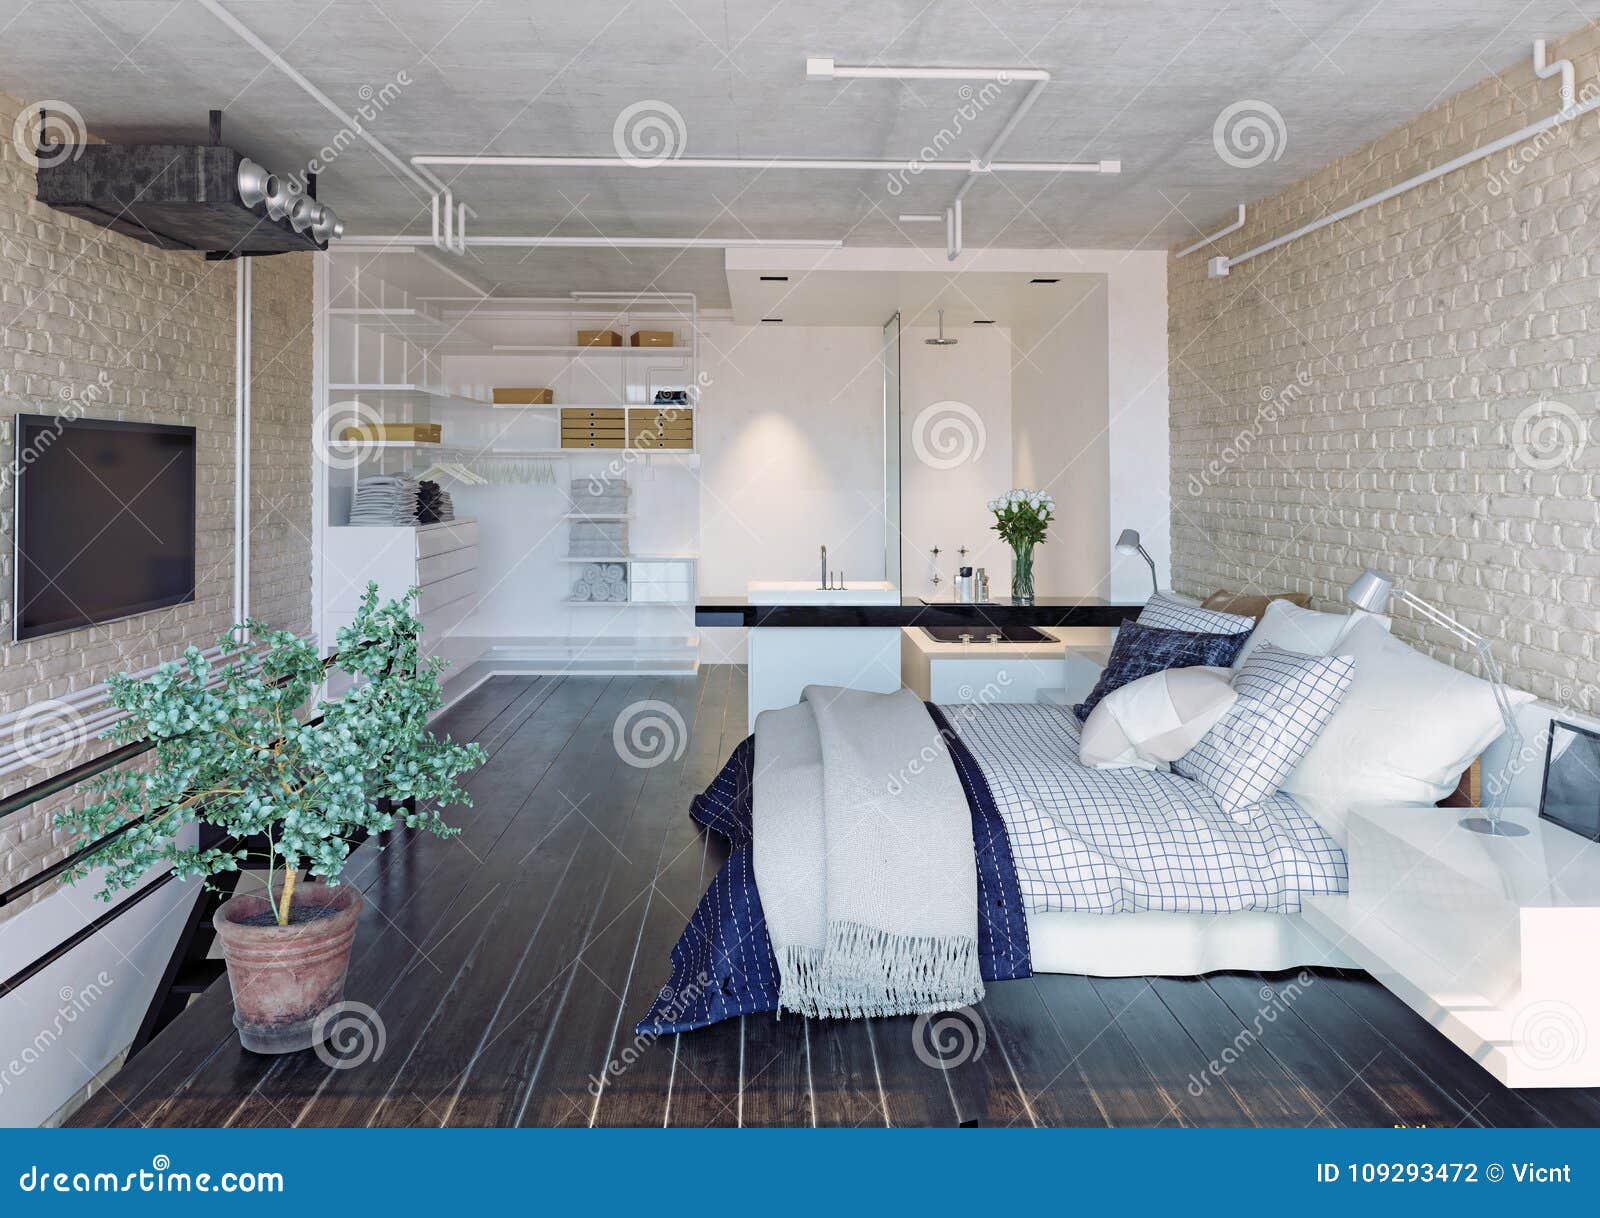 Modernes Dachboden Schlafzimmer Stock Abbildung